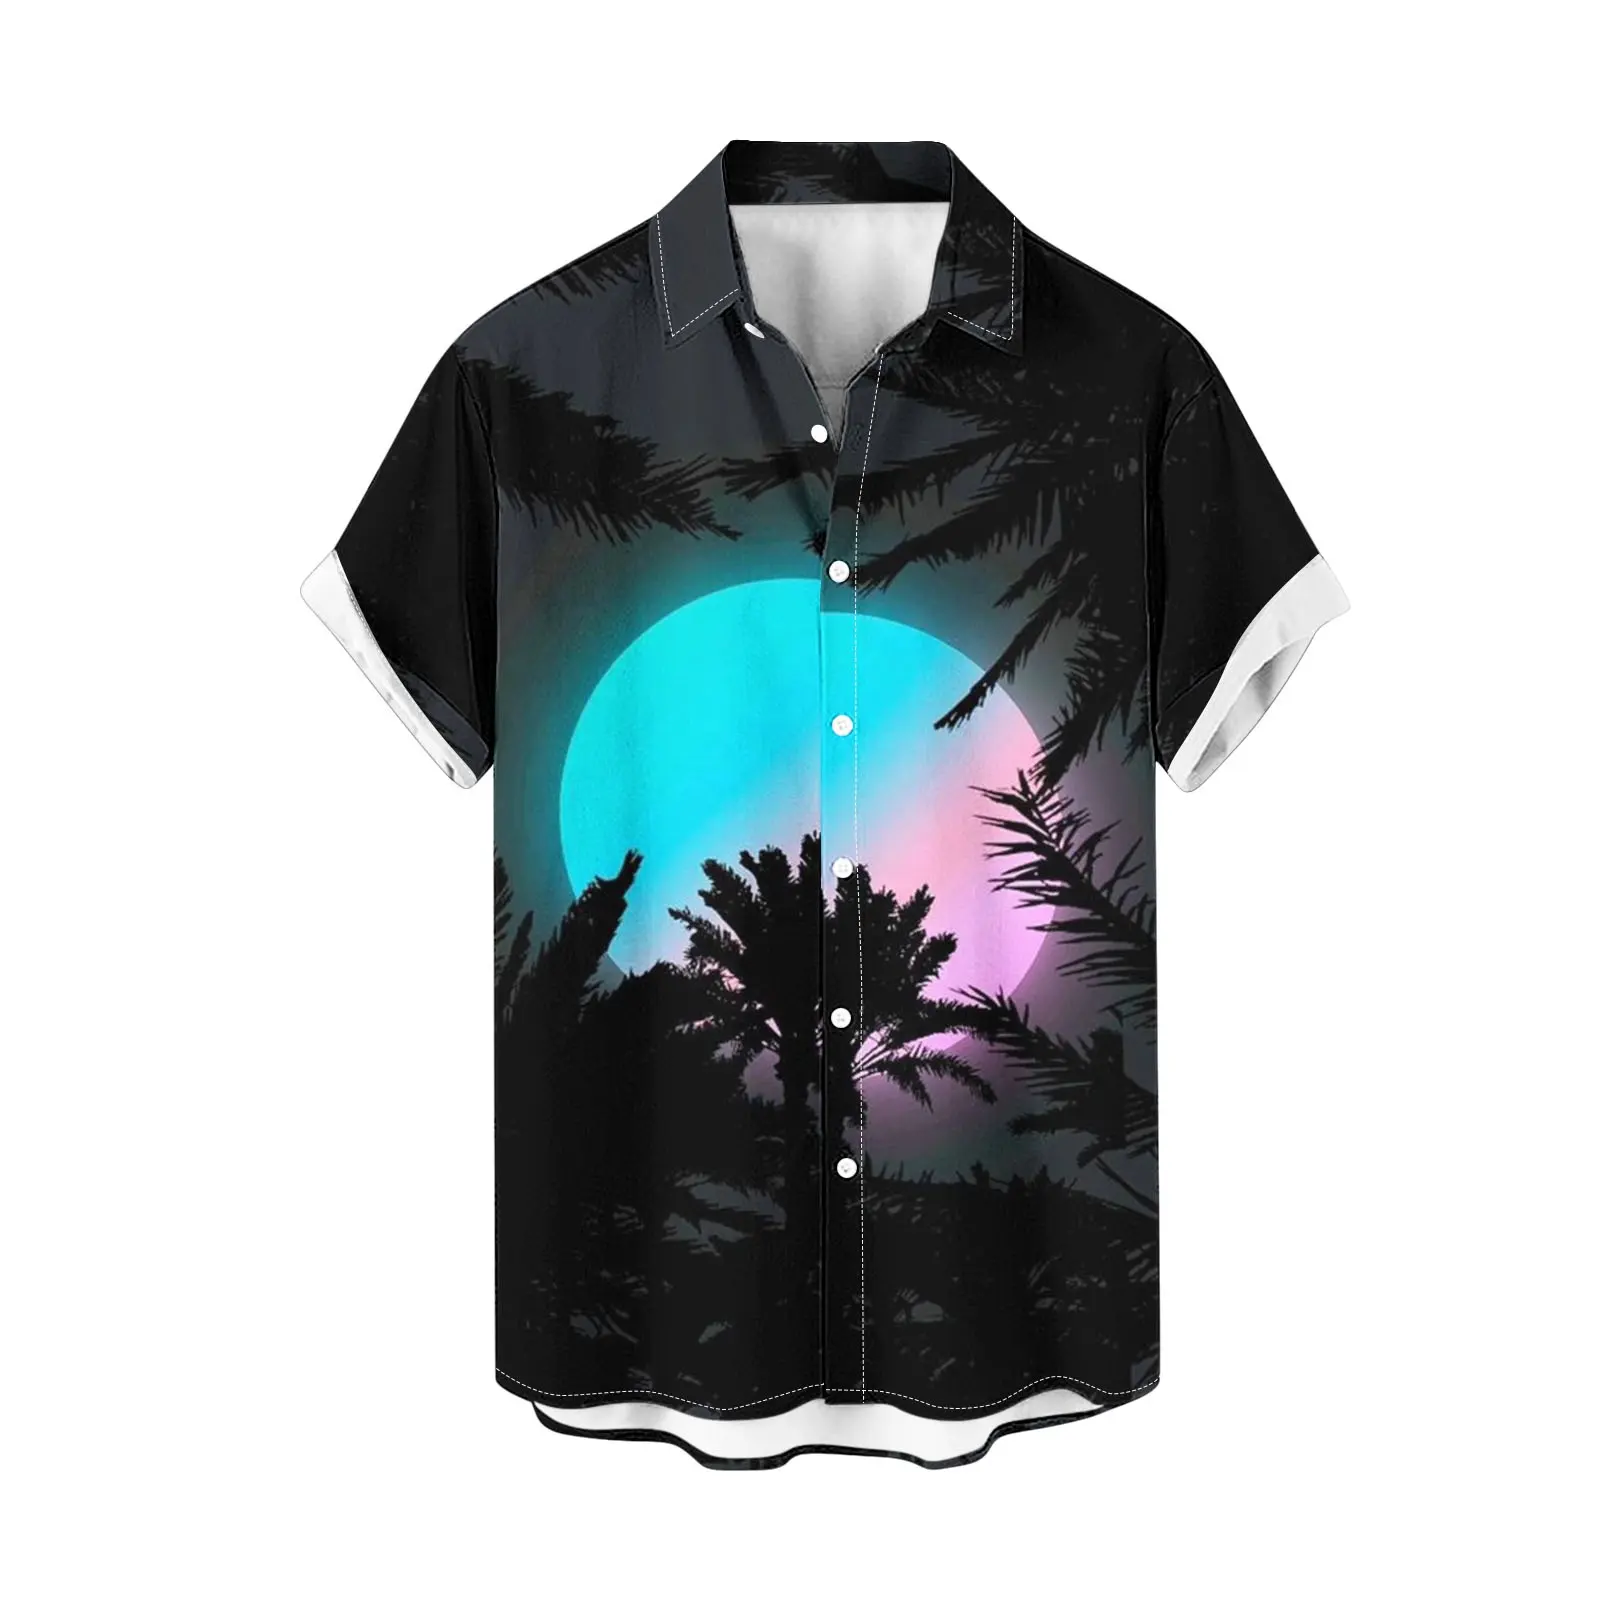 Vente en gros de t-shirts imprimés sublimation unisexe t-shirts polo de golf pour hommes chemises pour hommes vêtements